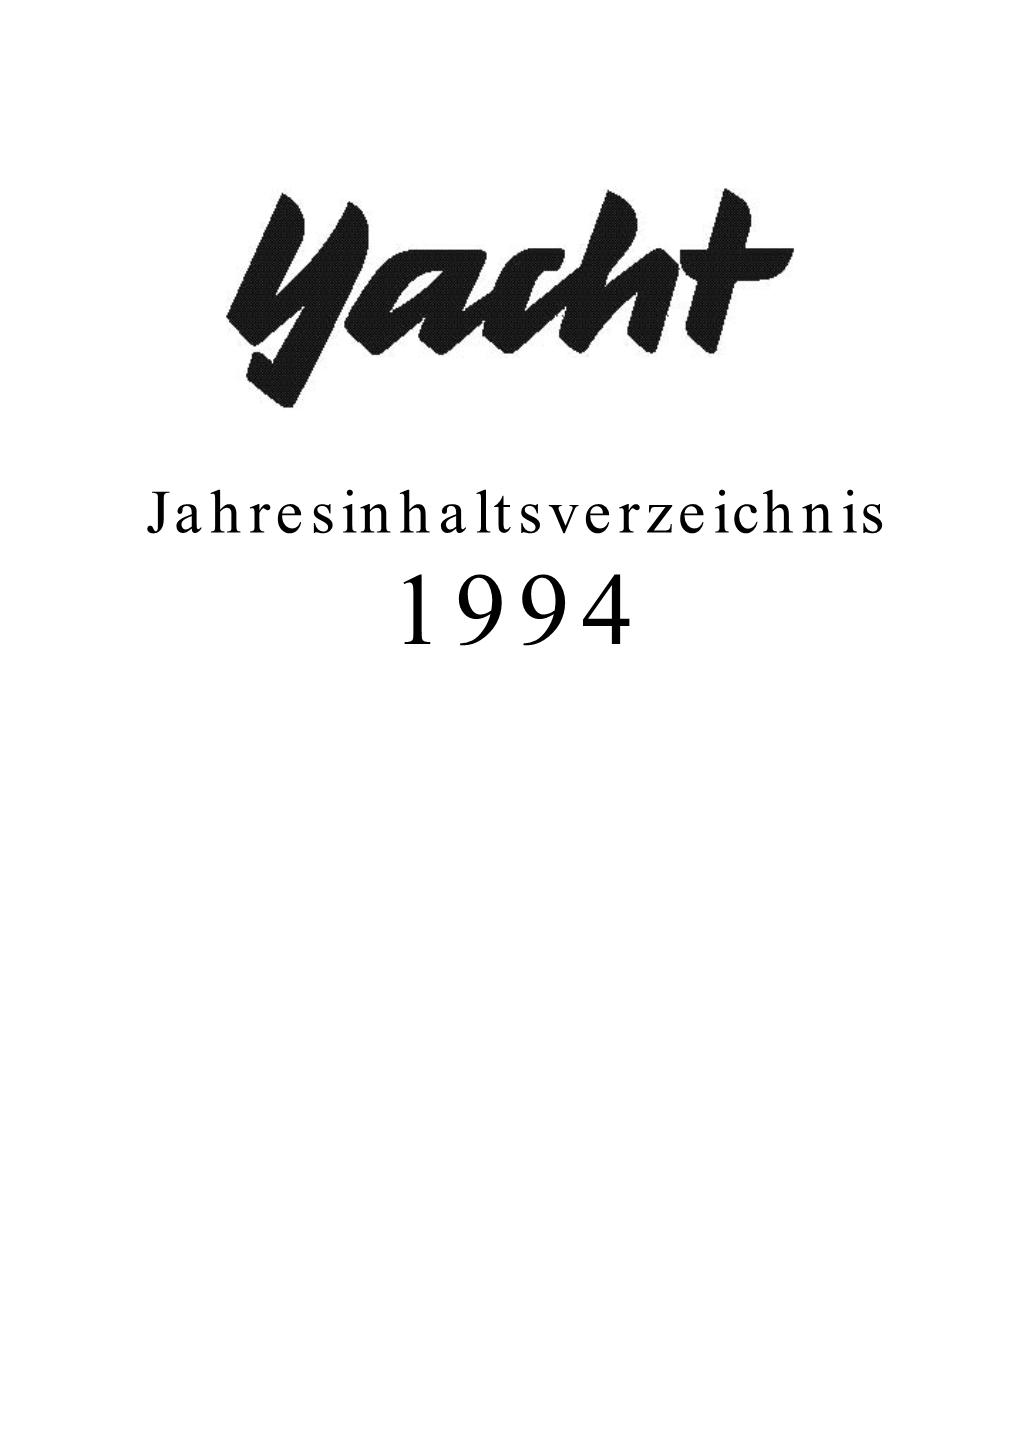 Jahresinhaltsverzeichnis 1994